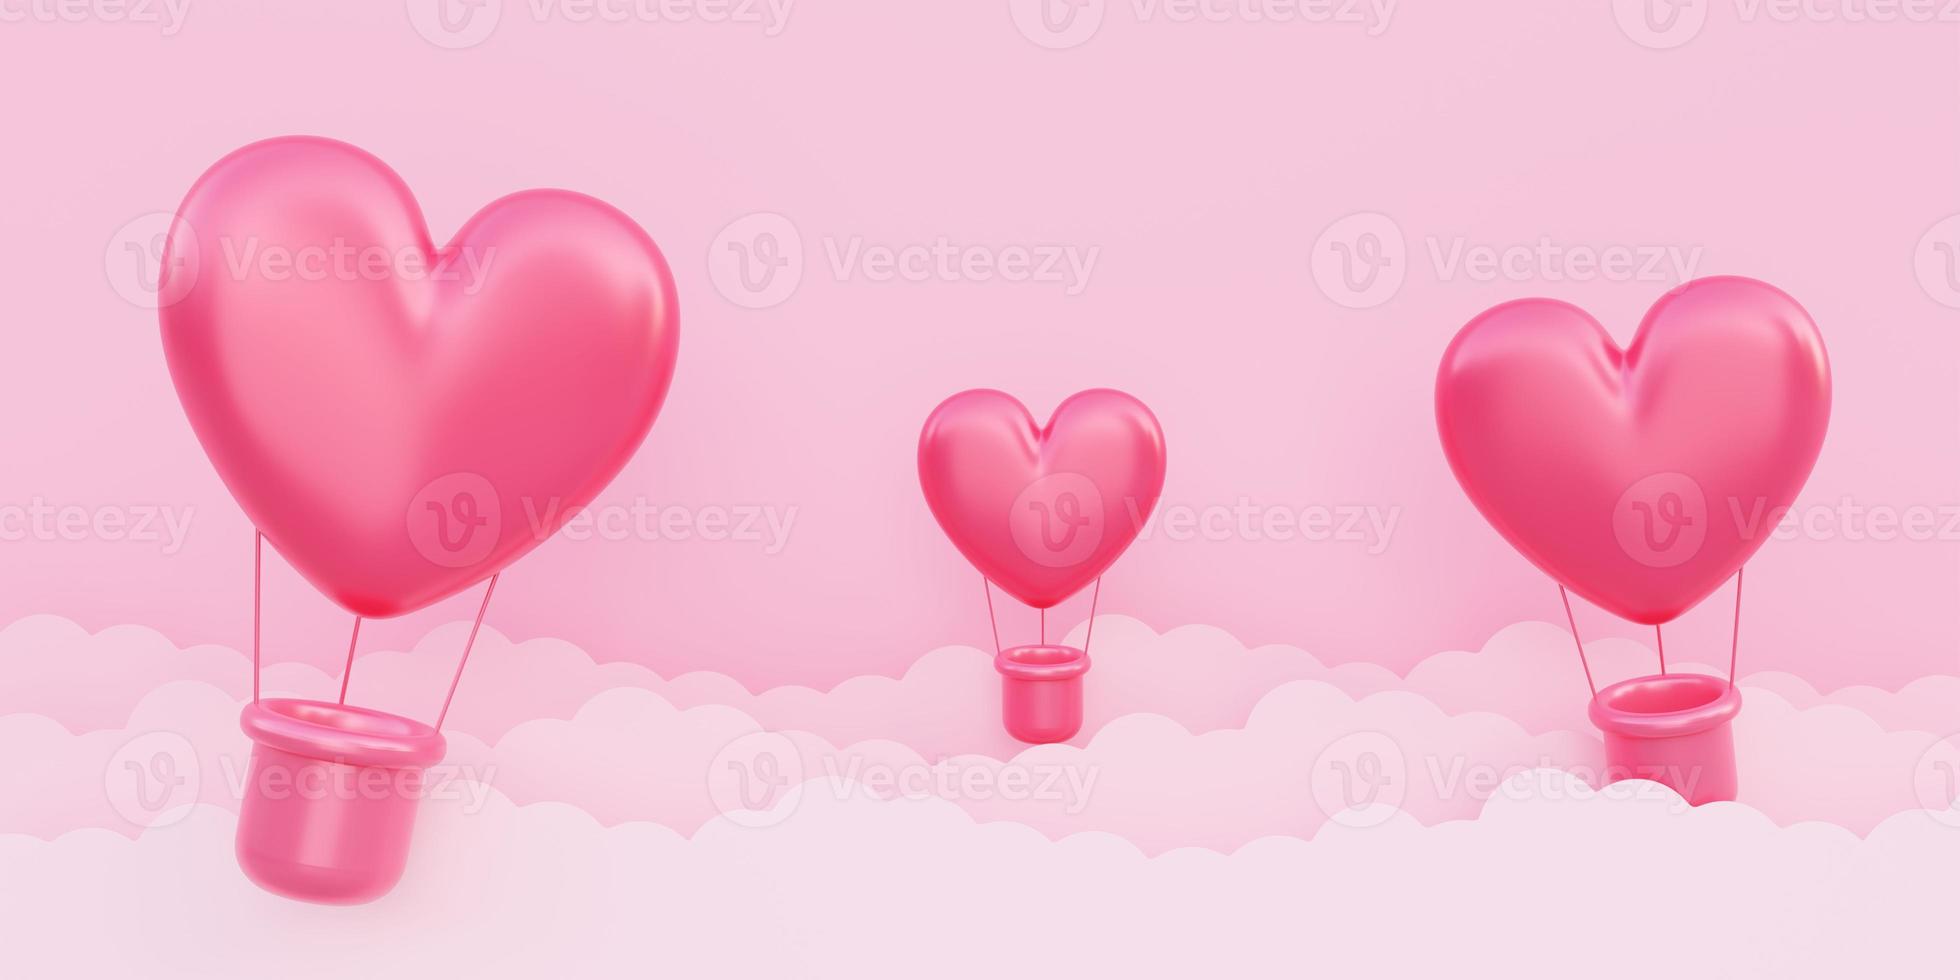 dia dos namorados, fundo do conceito de amor, vermelho Balões de ar quente em forma de coração 3d voando no céu foto